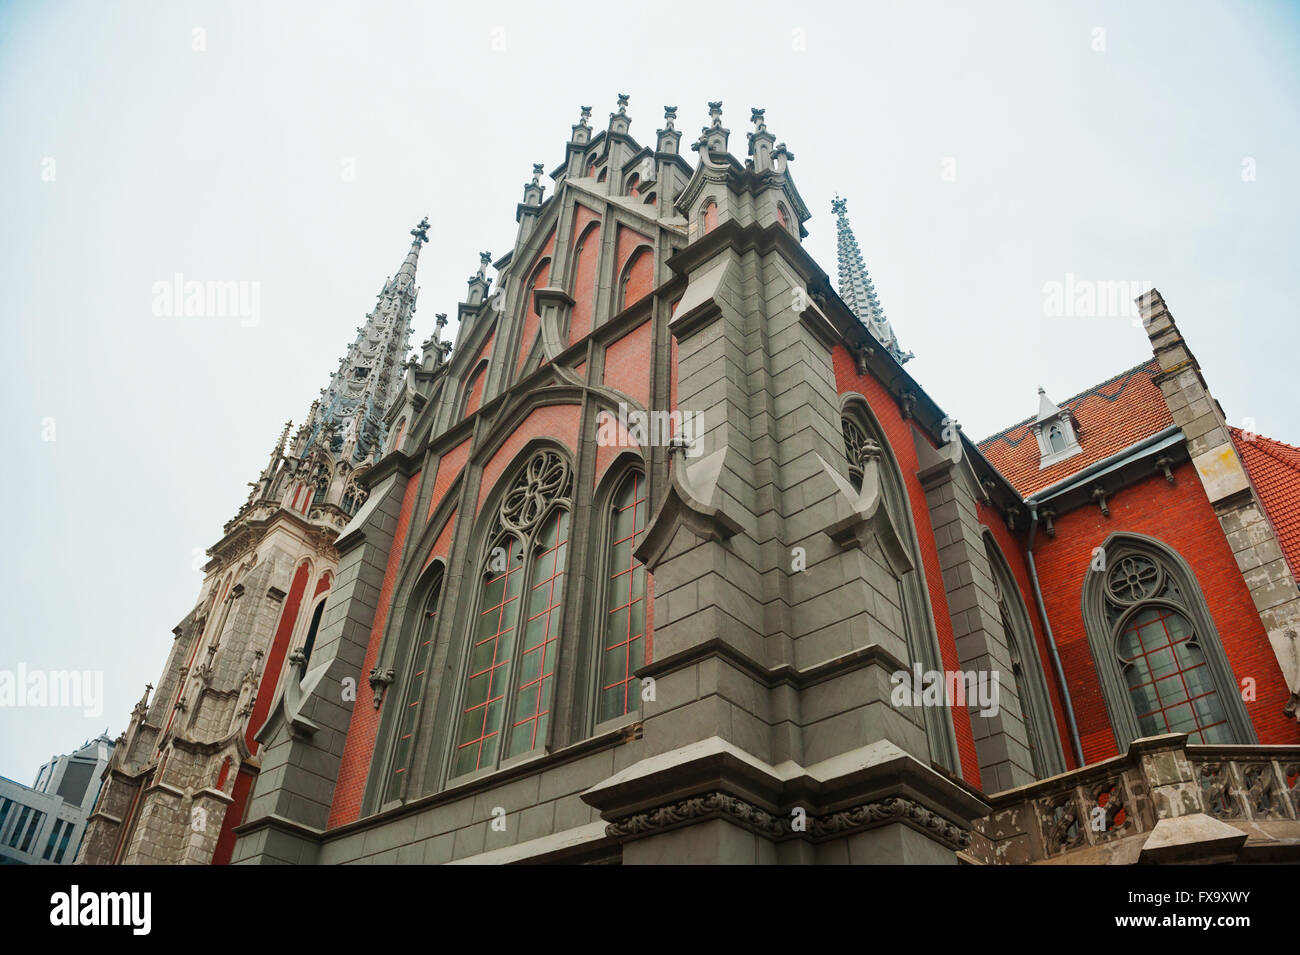 Église catholique dans l'architecture de style gothique Banque D'Images